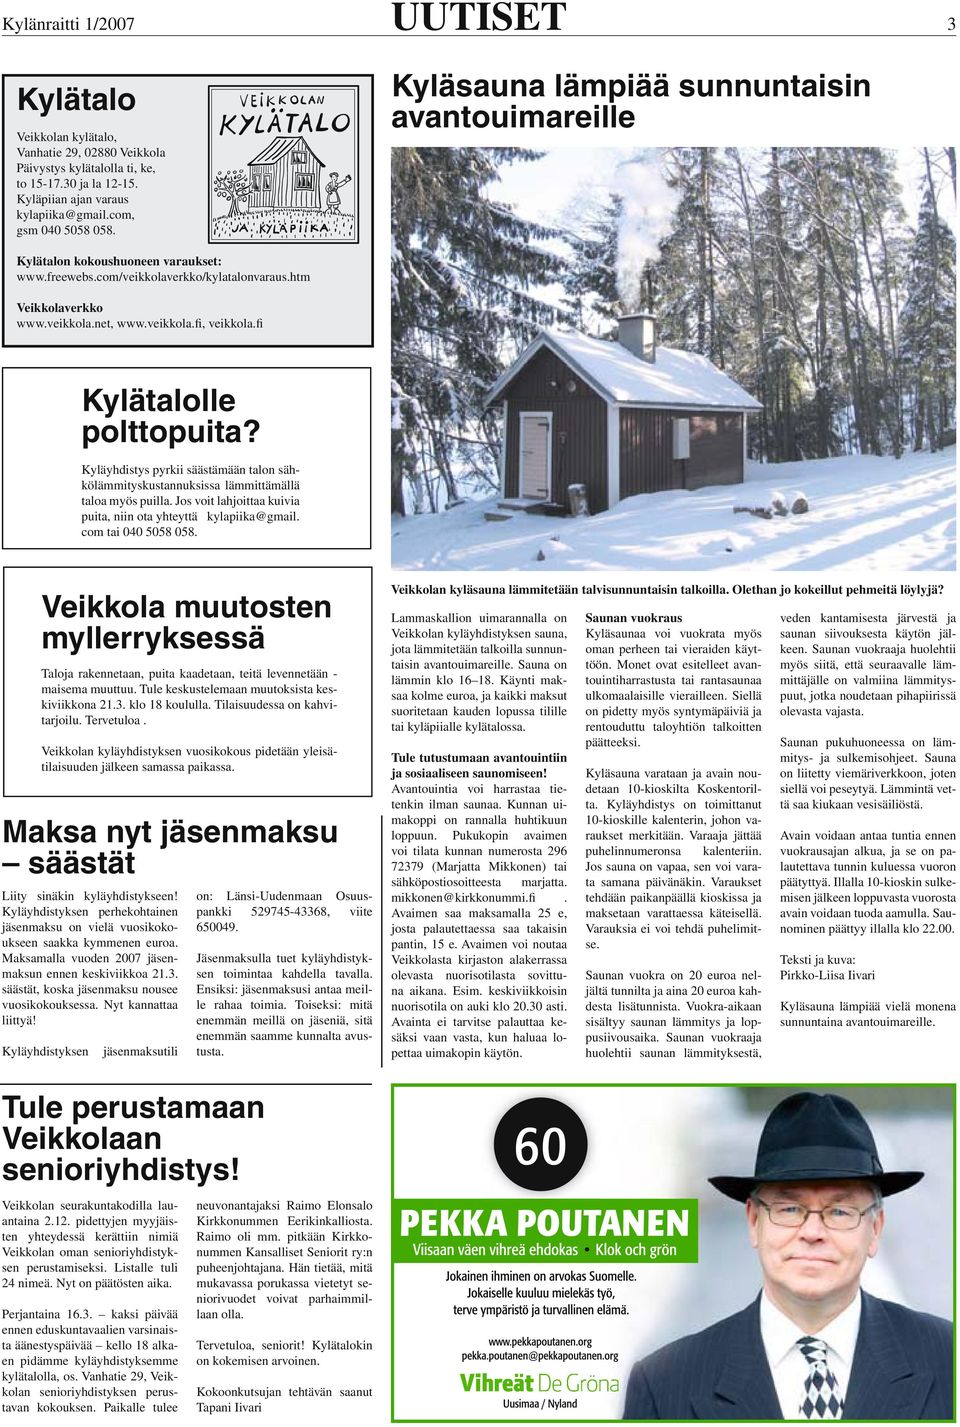 veikkola.fi, veikkola.fi Kylätalolle polttopuita? Kyläyhdistys pyrkii säästämään talon sähkölämmityskustannuksissa lämmittämällä taloa myös puilla.